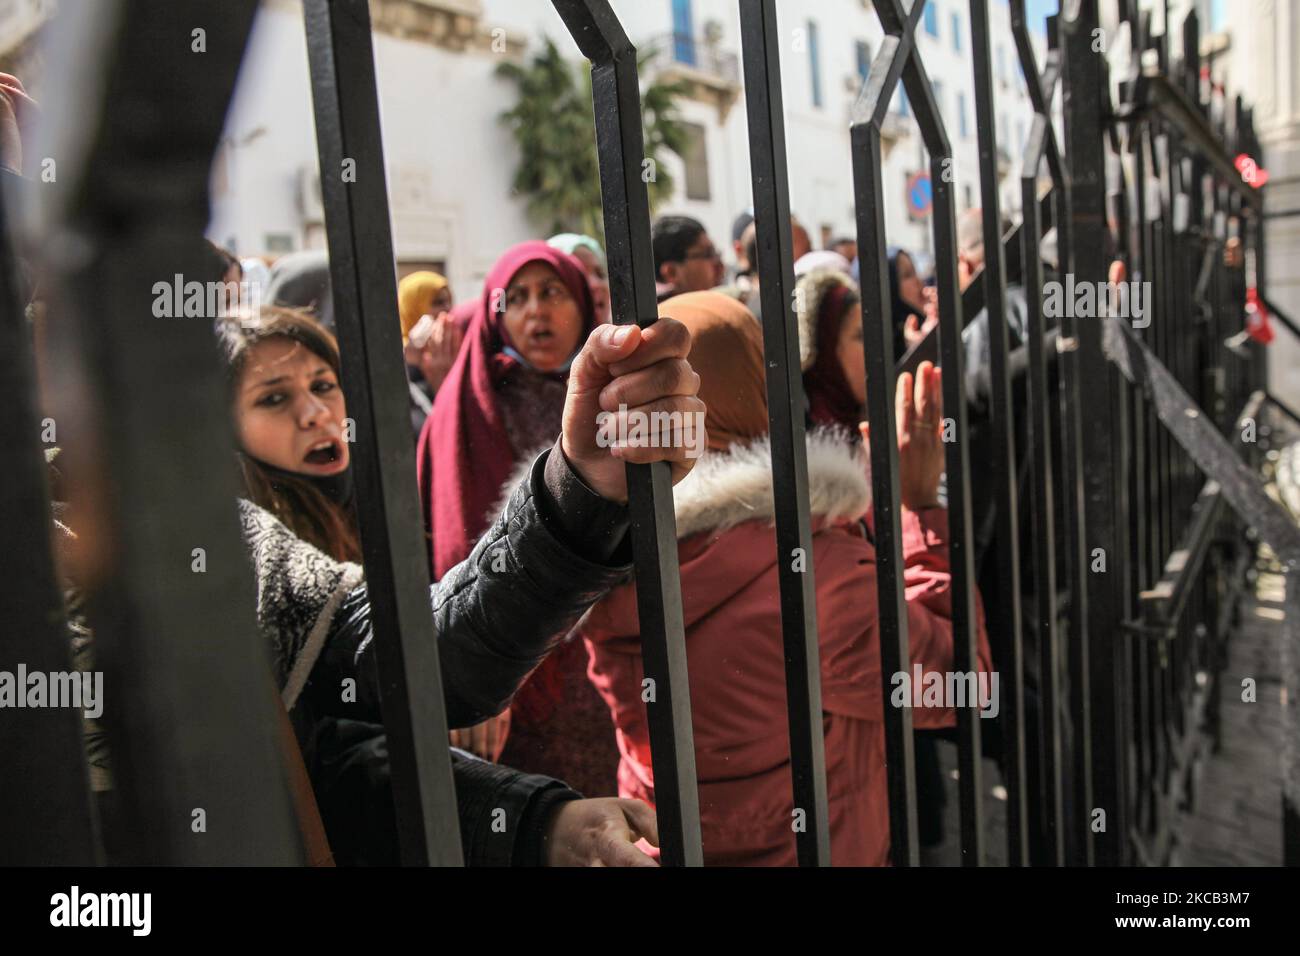 Arbeitslose tunesische Absolventen der Universität rufen am 17. März 2021 vor dem Ministerium für soziale Angelegenheiten in Tunis, Tunesien, Slogans aus, während einer Protestaktion von außerhalb der, um einen Arbeitsvertrag zu fordern und um die Rekrutierung durch das Bildungsministerium zu bitten. (Foto von Chedly Ben Ibrahim/NurPhoto) Stockfoto